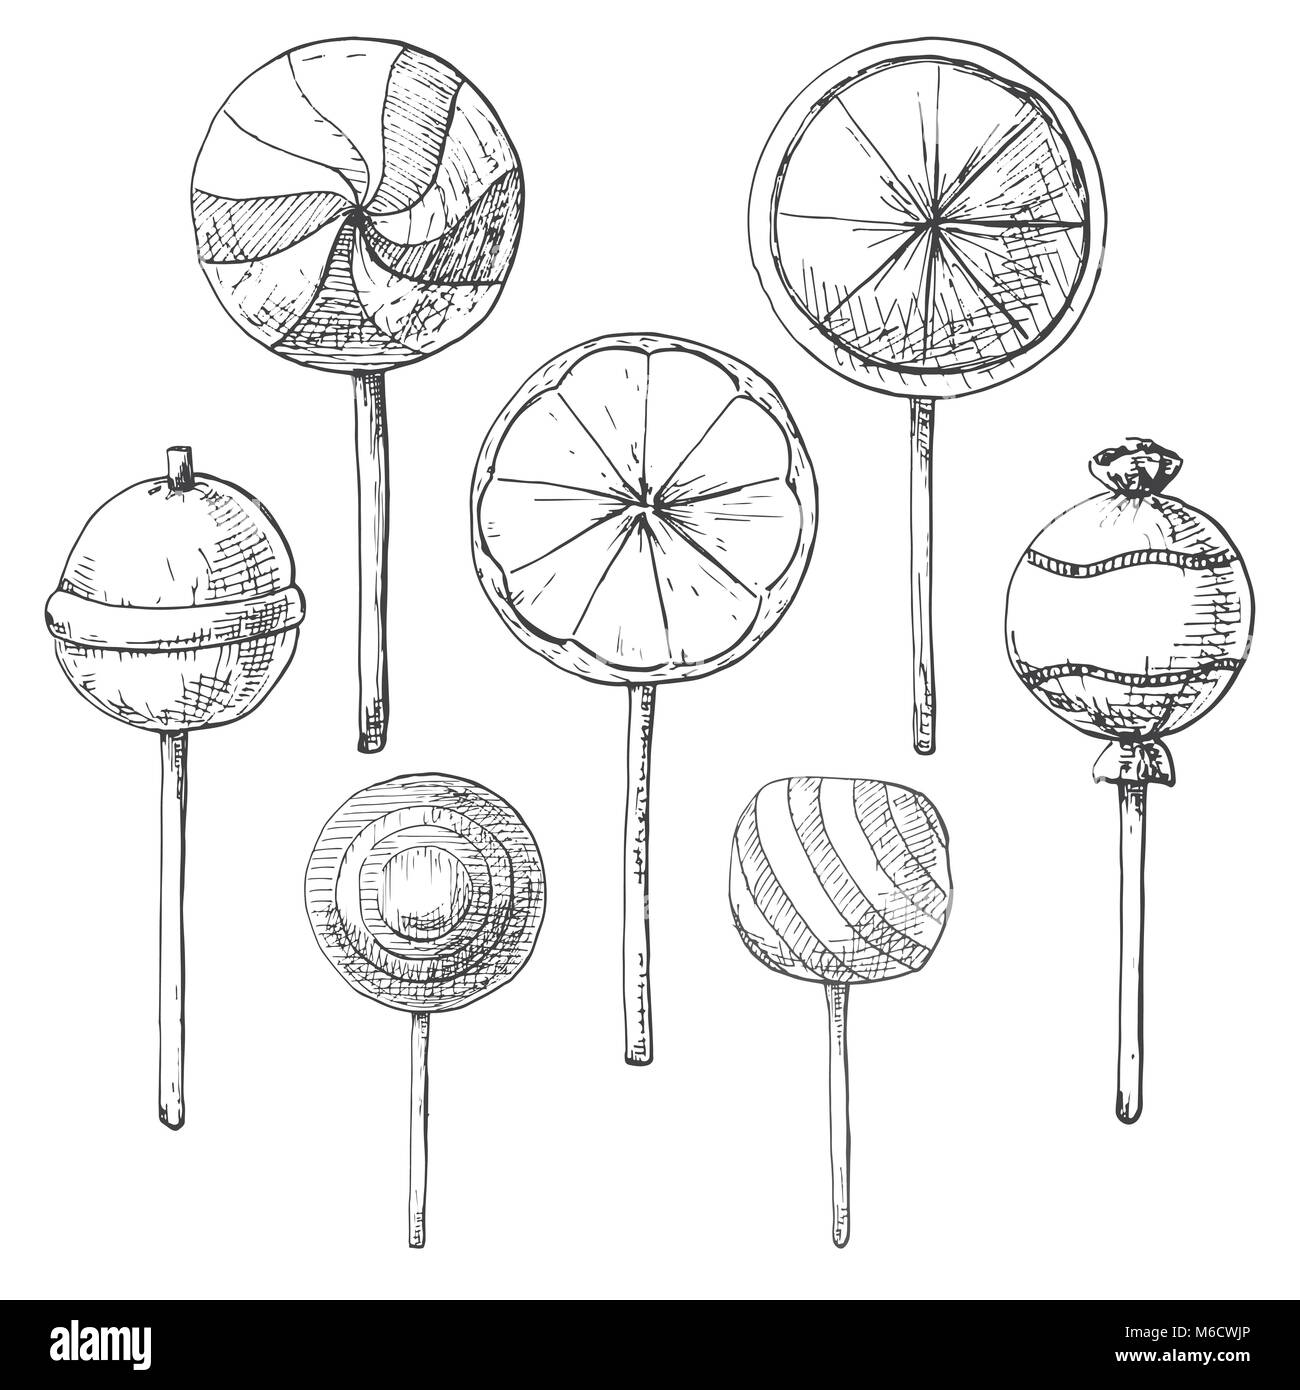 Disegnata a mano insieme di diversi connettori lollipop. Illustrazione vettoriale di un disegno stile. Illustrazione Vettoriale